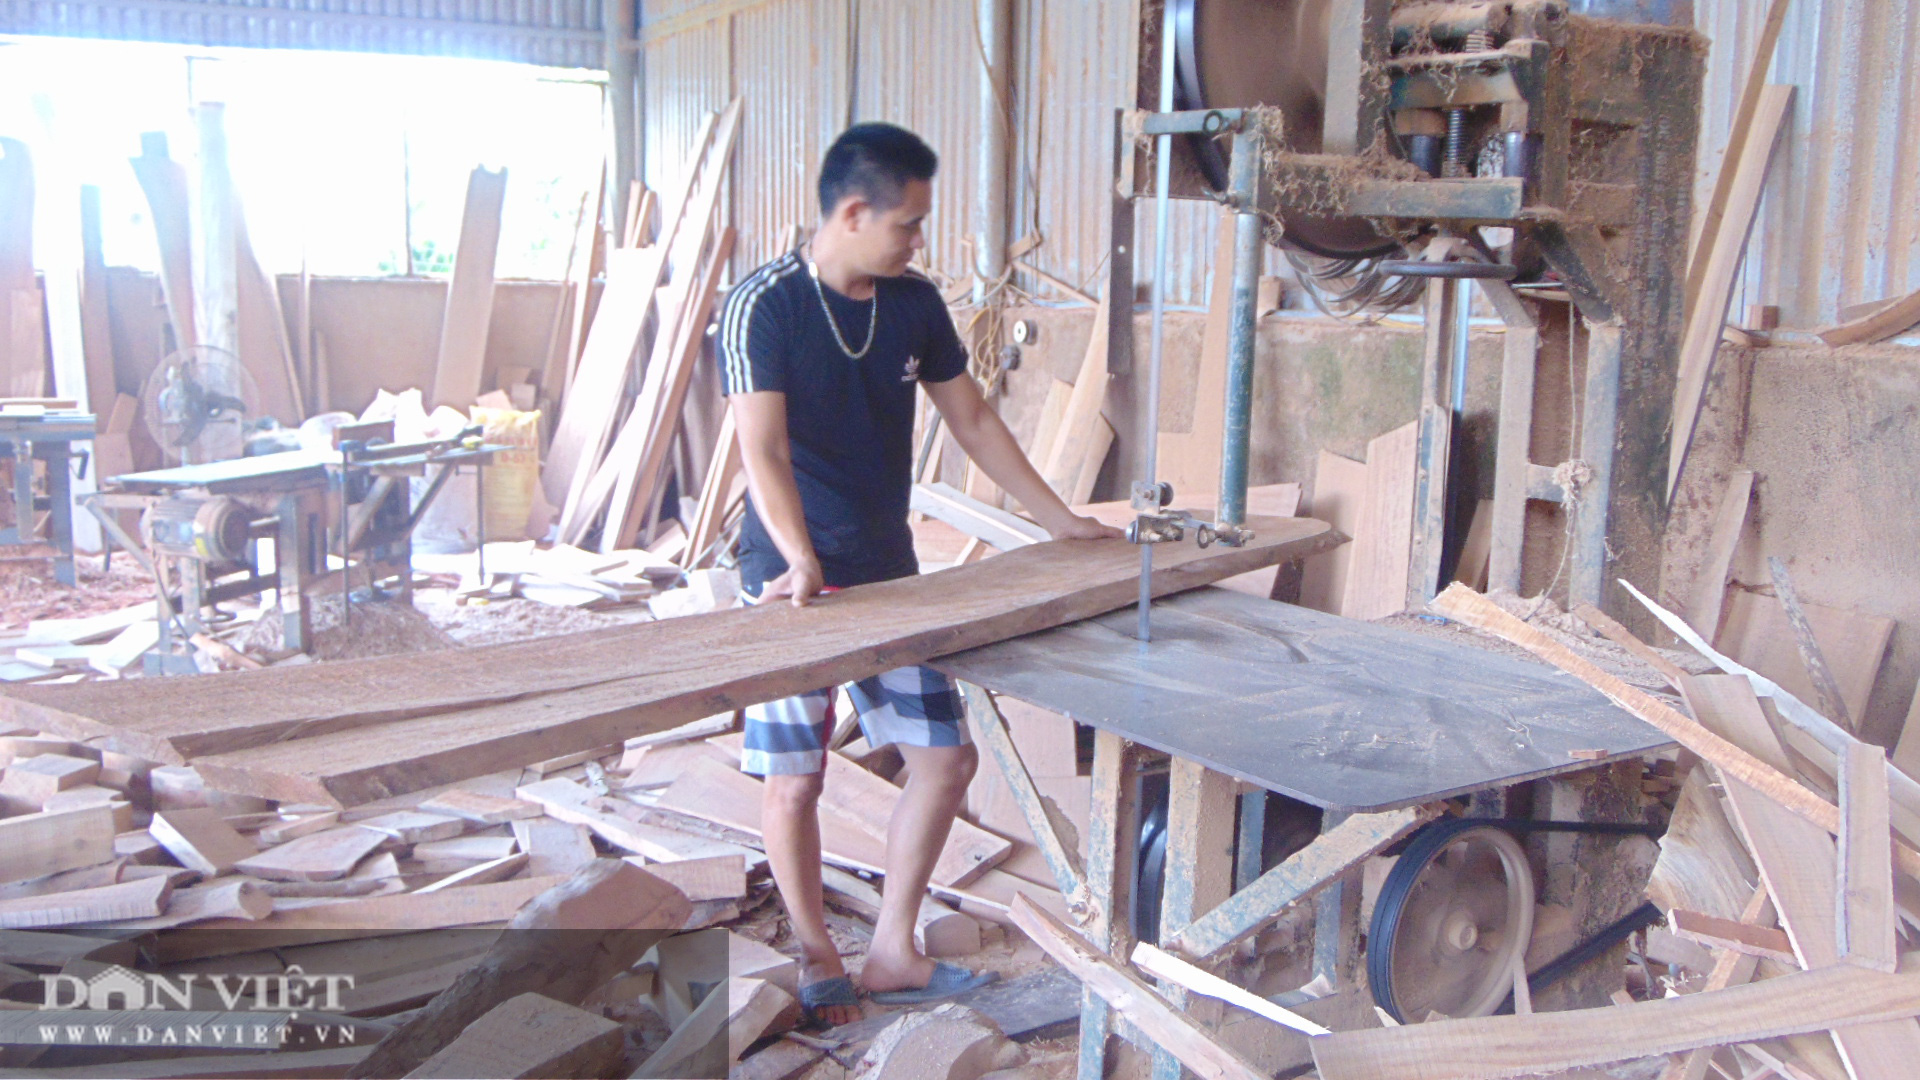 Thái Nguyên: Chàng thanh niên trẻ kiếm doanh thu tiền tỷ từ nghề đục đẽo  - Ảnh 1.